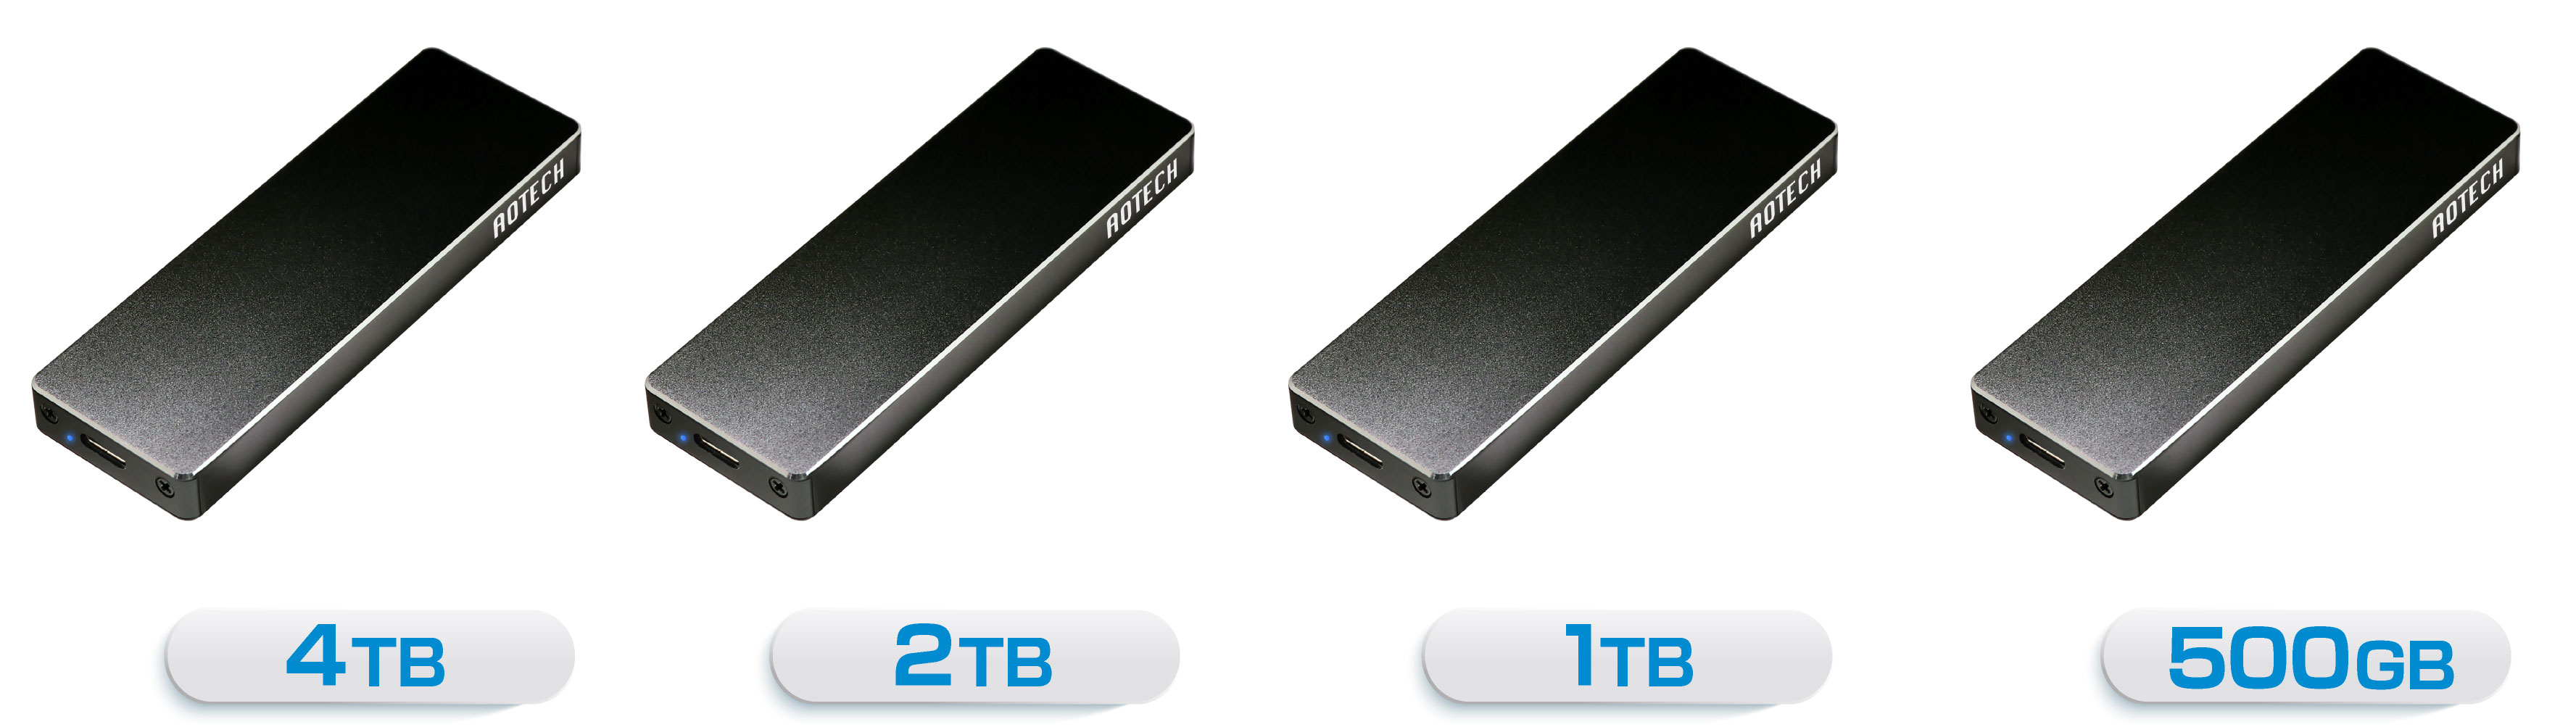 アオテック AOTECH NVMe 超高速外付けSSD 4TB/2TB/1TB/500GB AOK-M2NVME2000 / AOK-M2NVME1000 / AOK-M2NVME500 ITPROTECH アイティプロテック